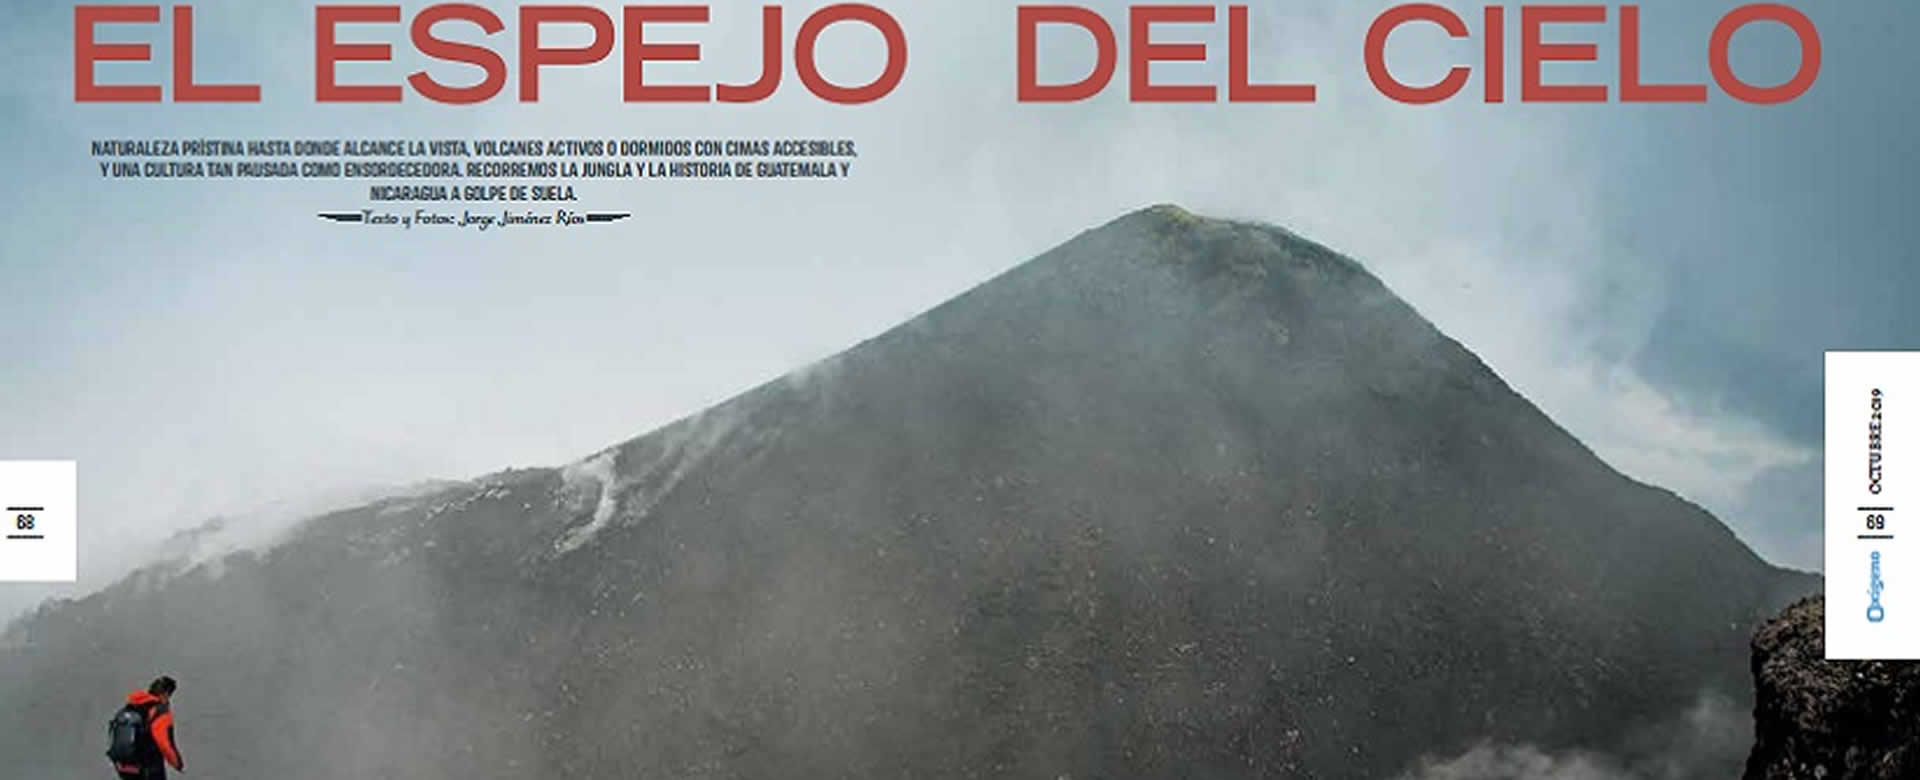 Revista española belleza volcánica